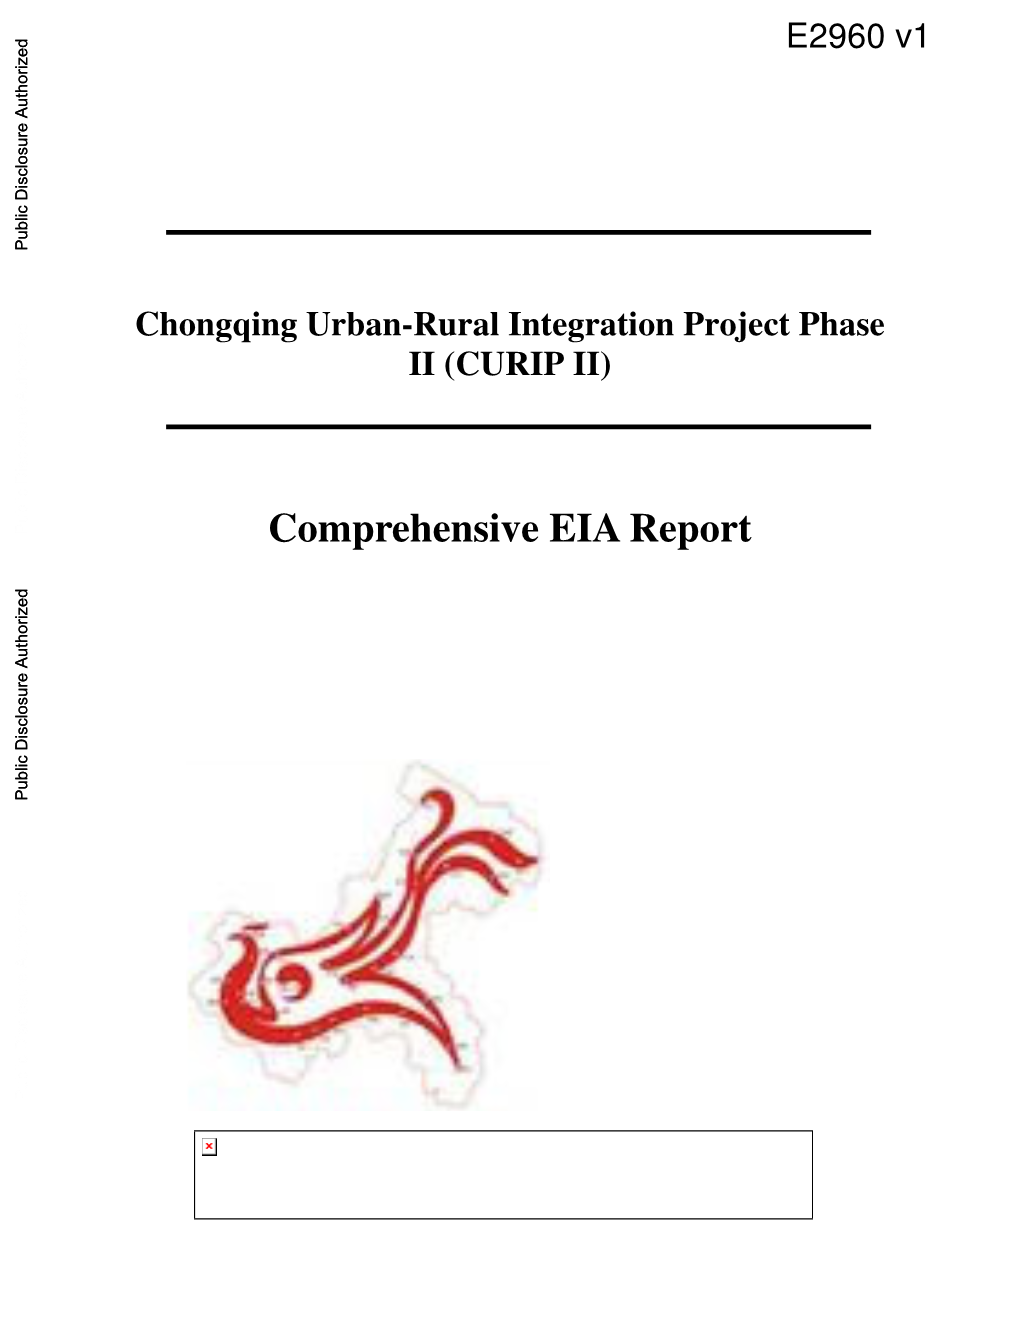 Comprehensive EIA Report